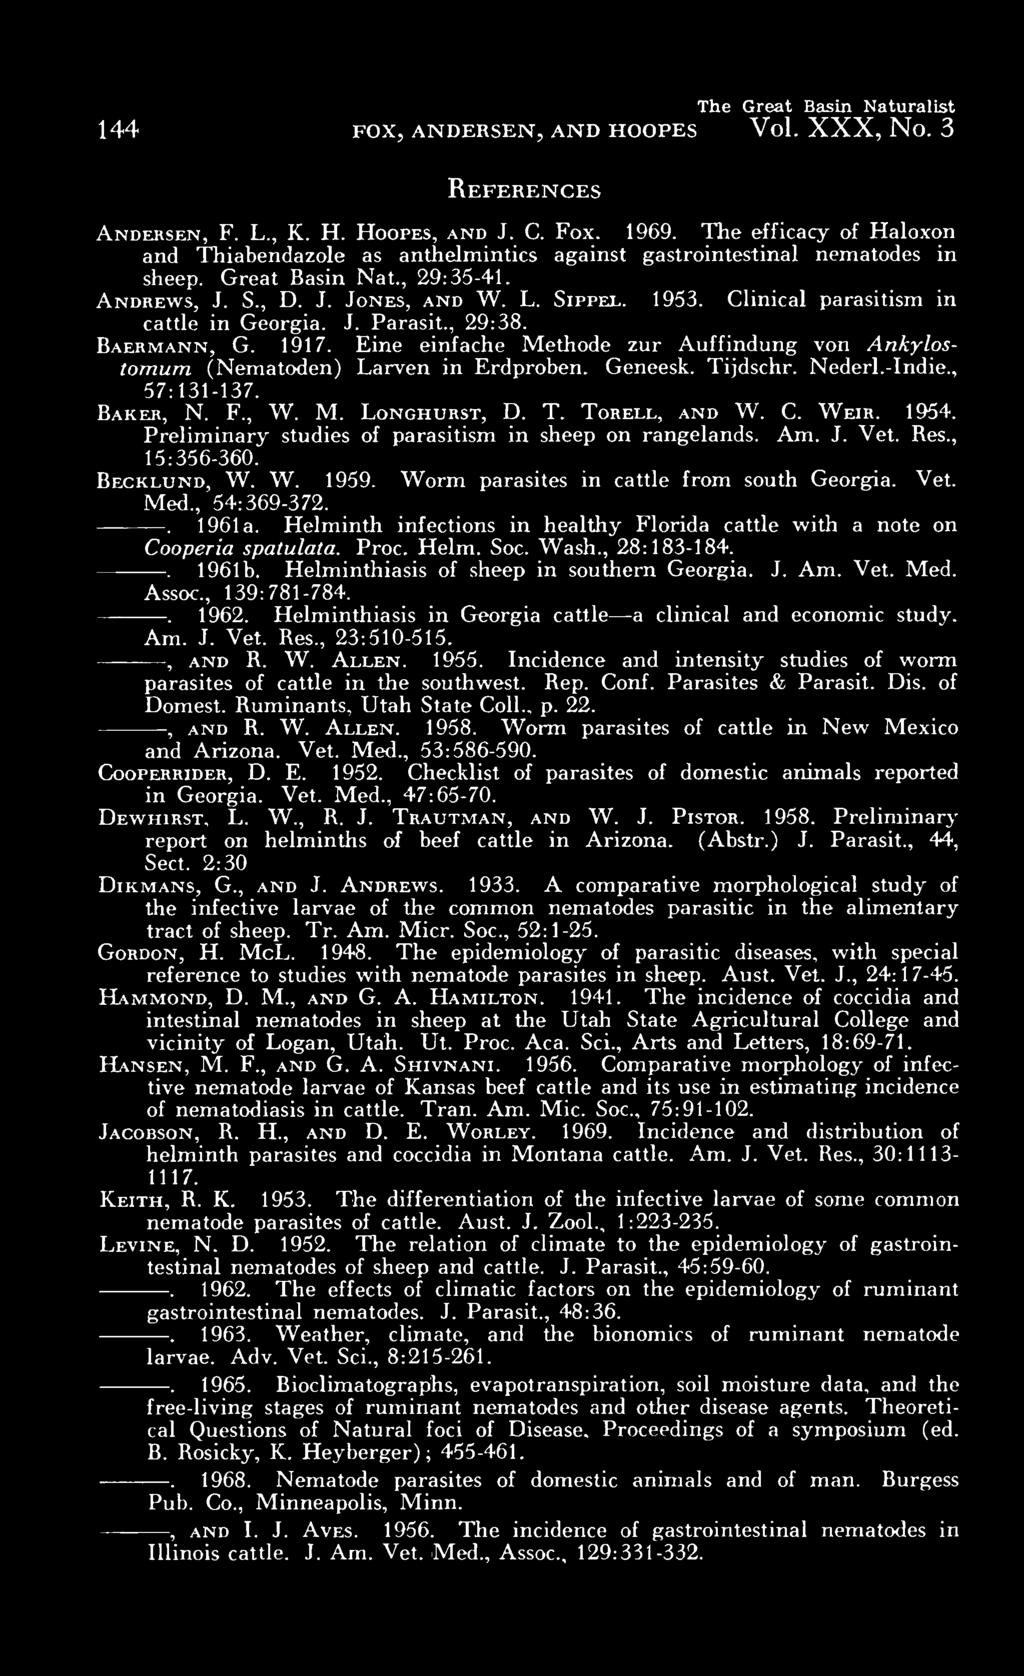 Clinical parasitism in cattle in Georgia. J. Parasit., 29:38. Baermann, G. 1917. Eine einfache Methode zur Auffindung von Ankylostomum (Nematoden) Larven in Erdproben. Geneesk. Tijdschr. Nederl.